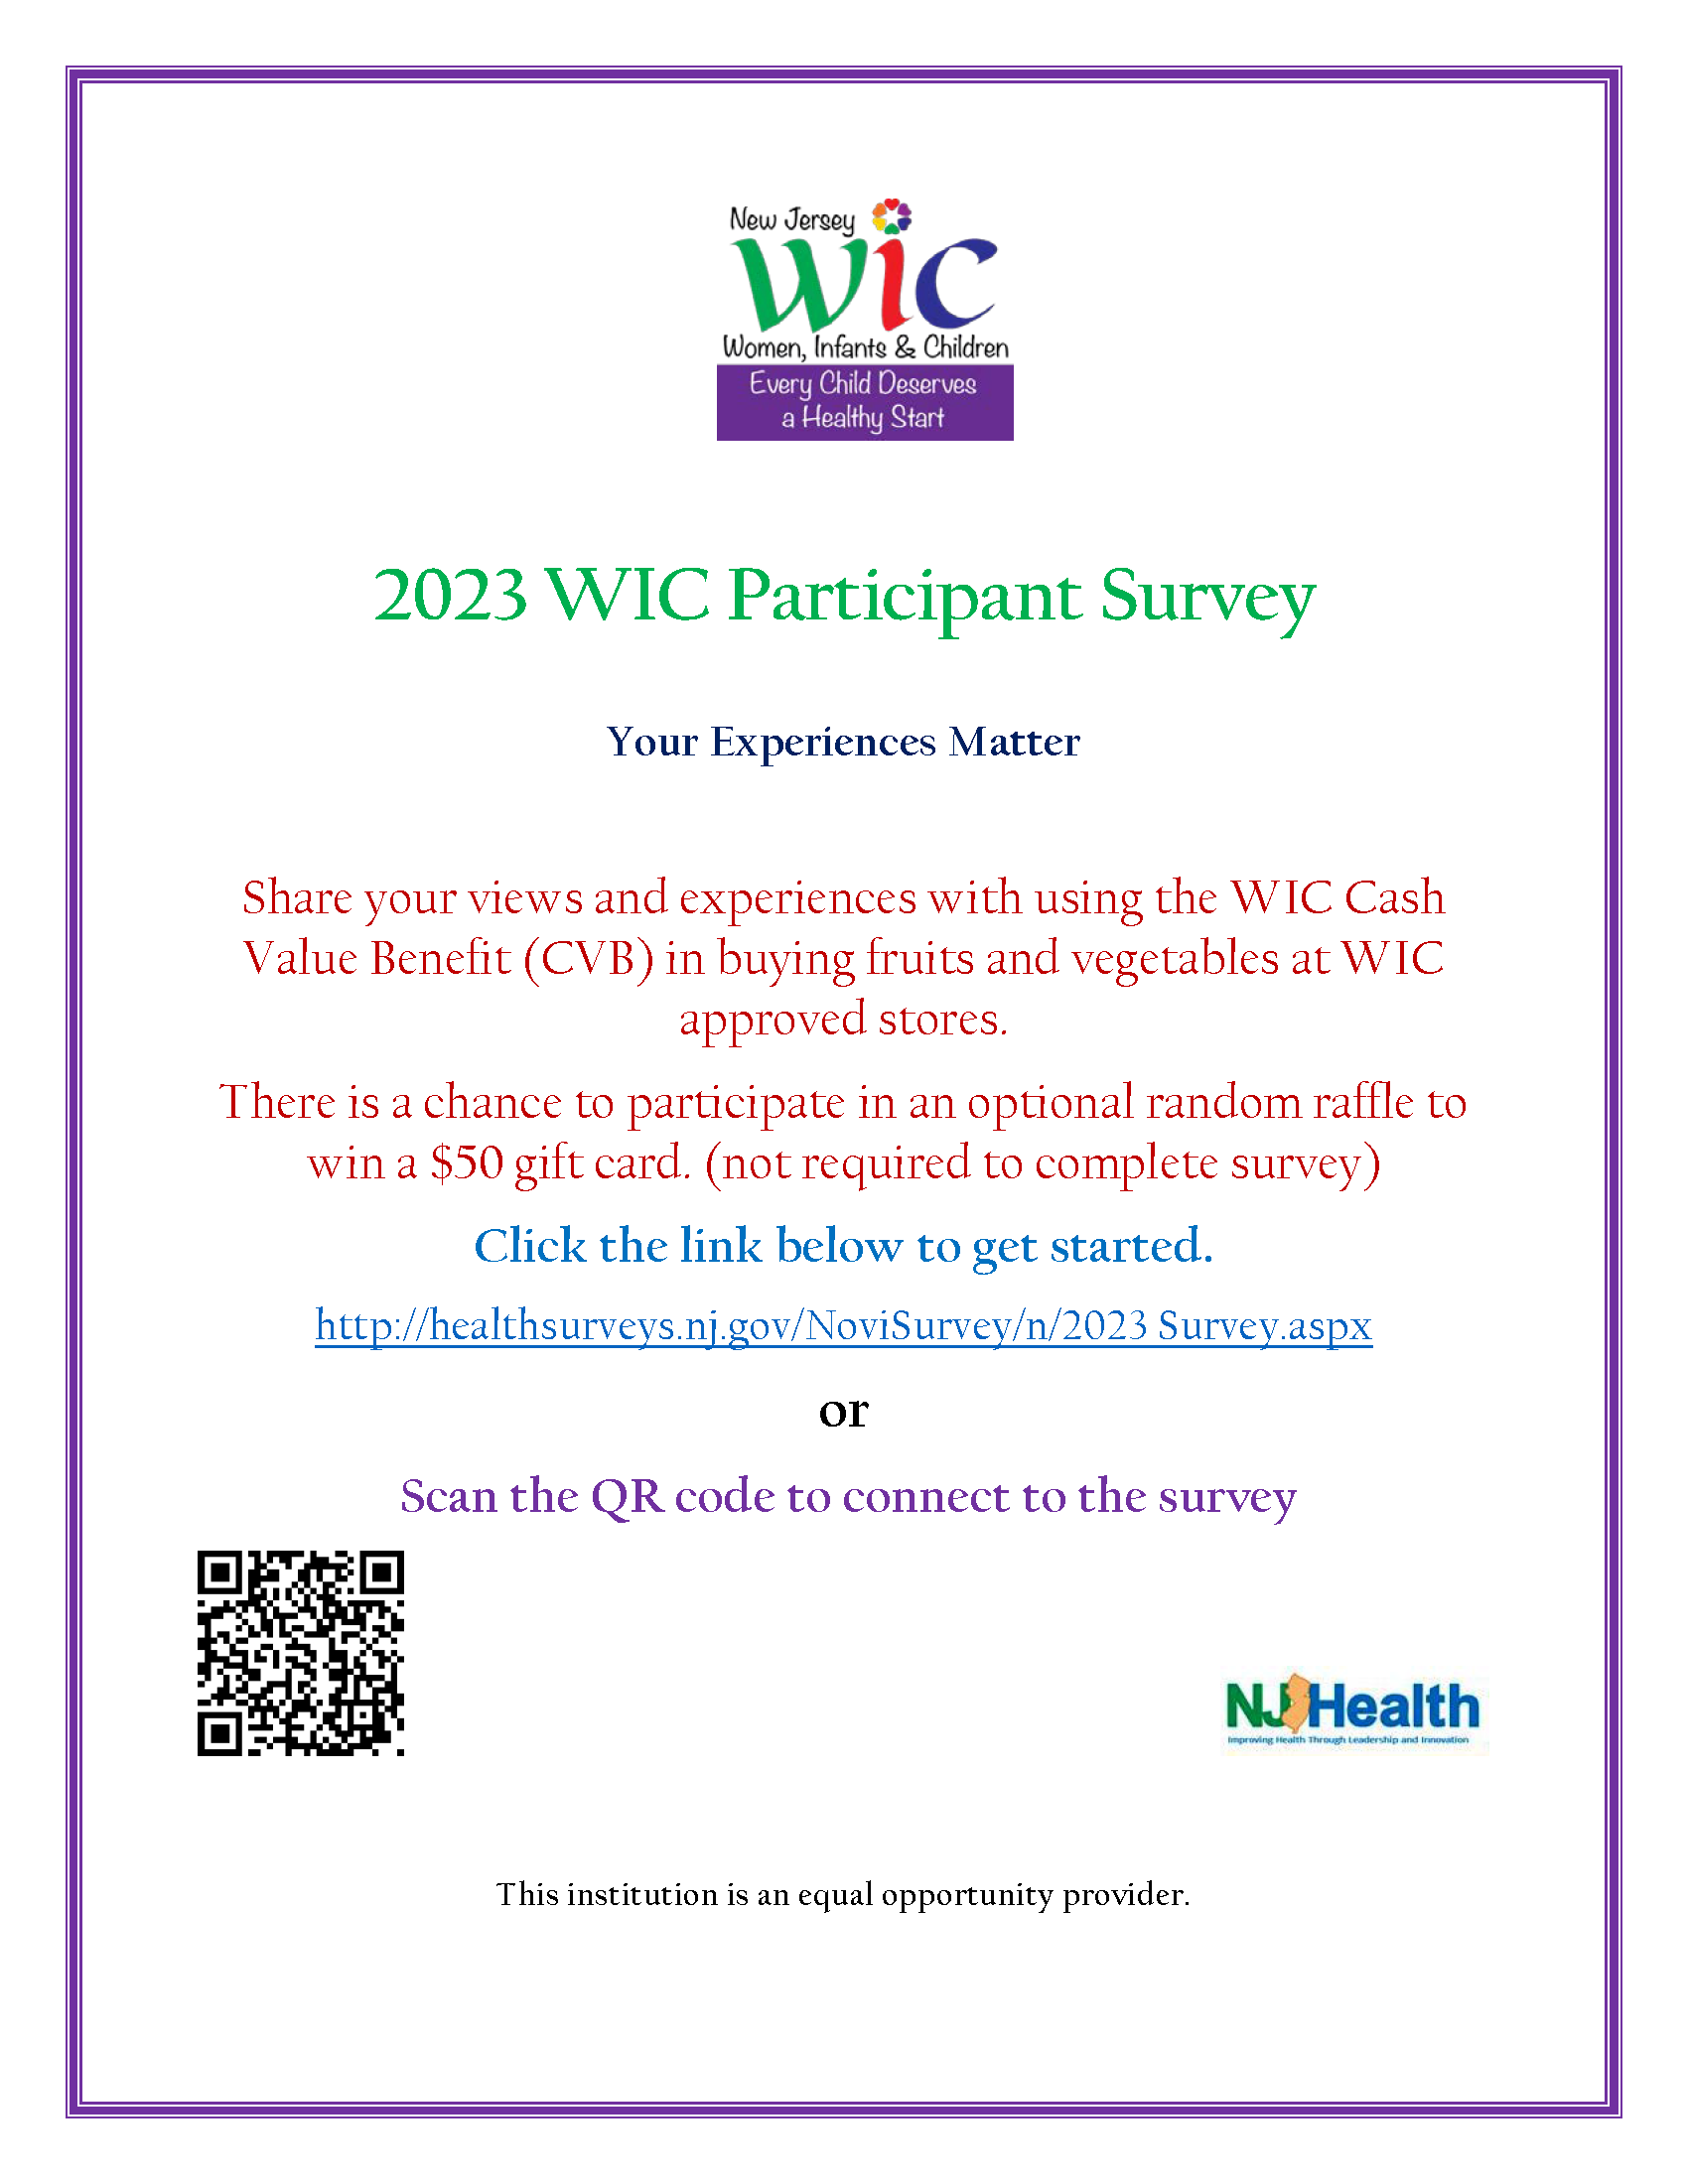 2023 Participant Survey